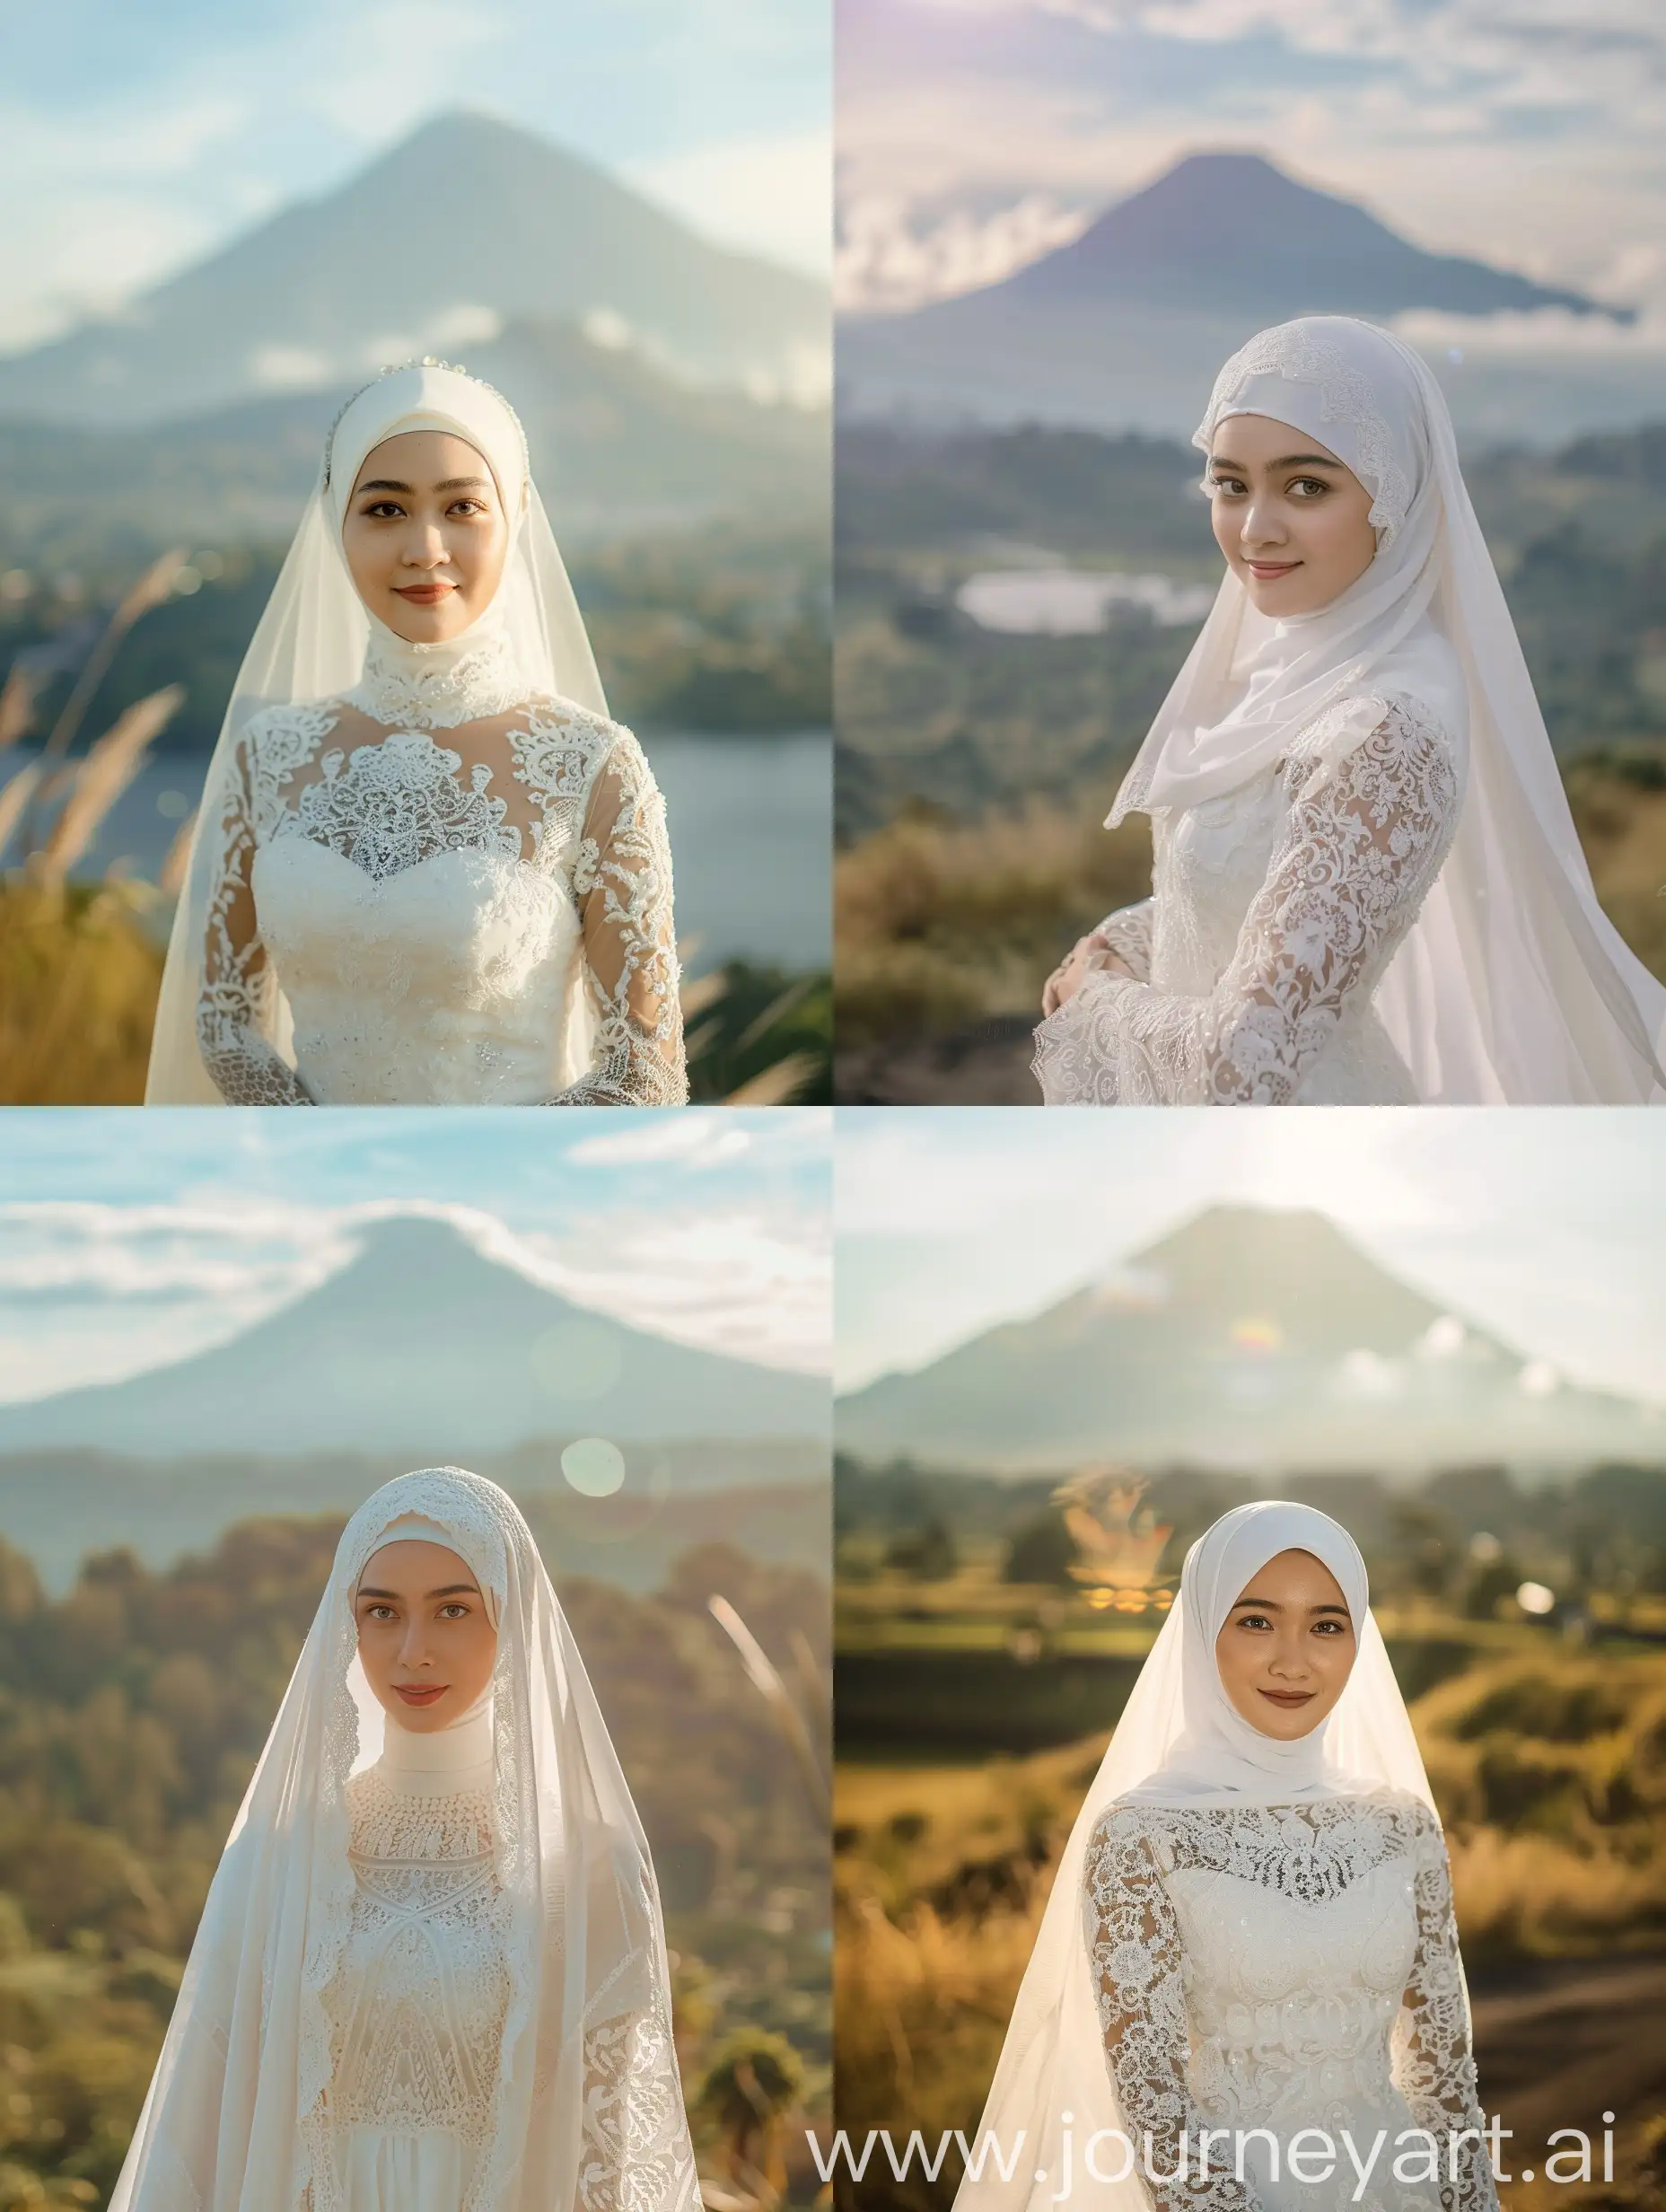 Fotografi sinematik. Wanita cantik hijab Indonesia mengenakan mukenah putih muslim dan gaun putih. Fokus fokus berdiri dibelakangnya terdapat pemandangan gunung Uhud yang indah. Badan menghadap kedepan. Tersenyum. 